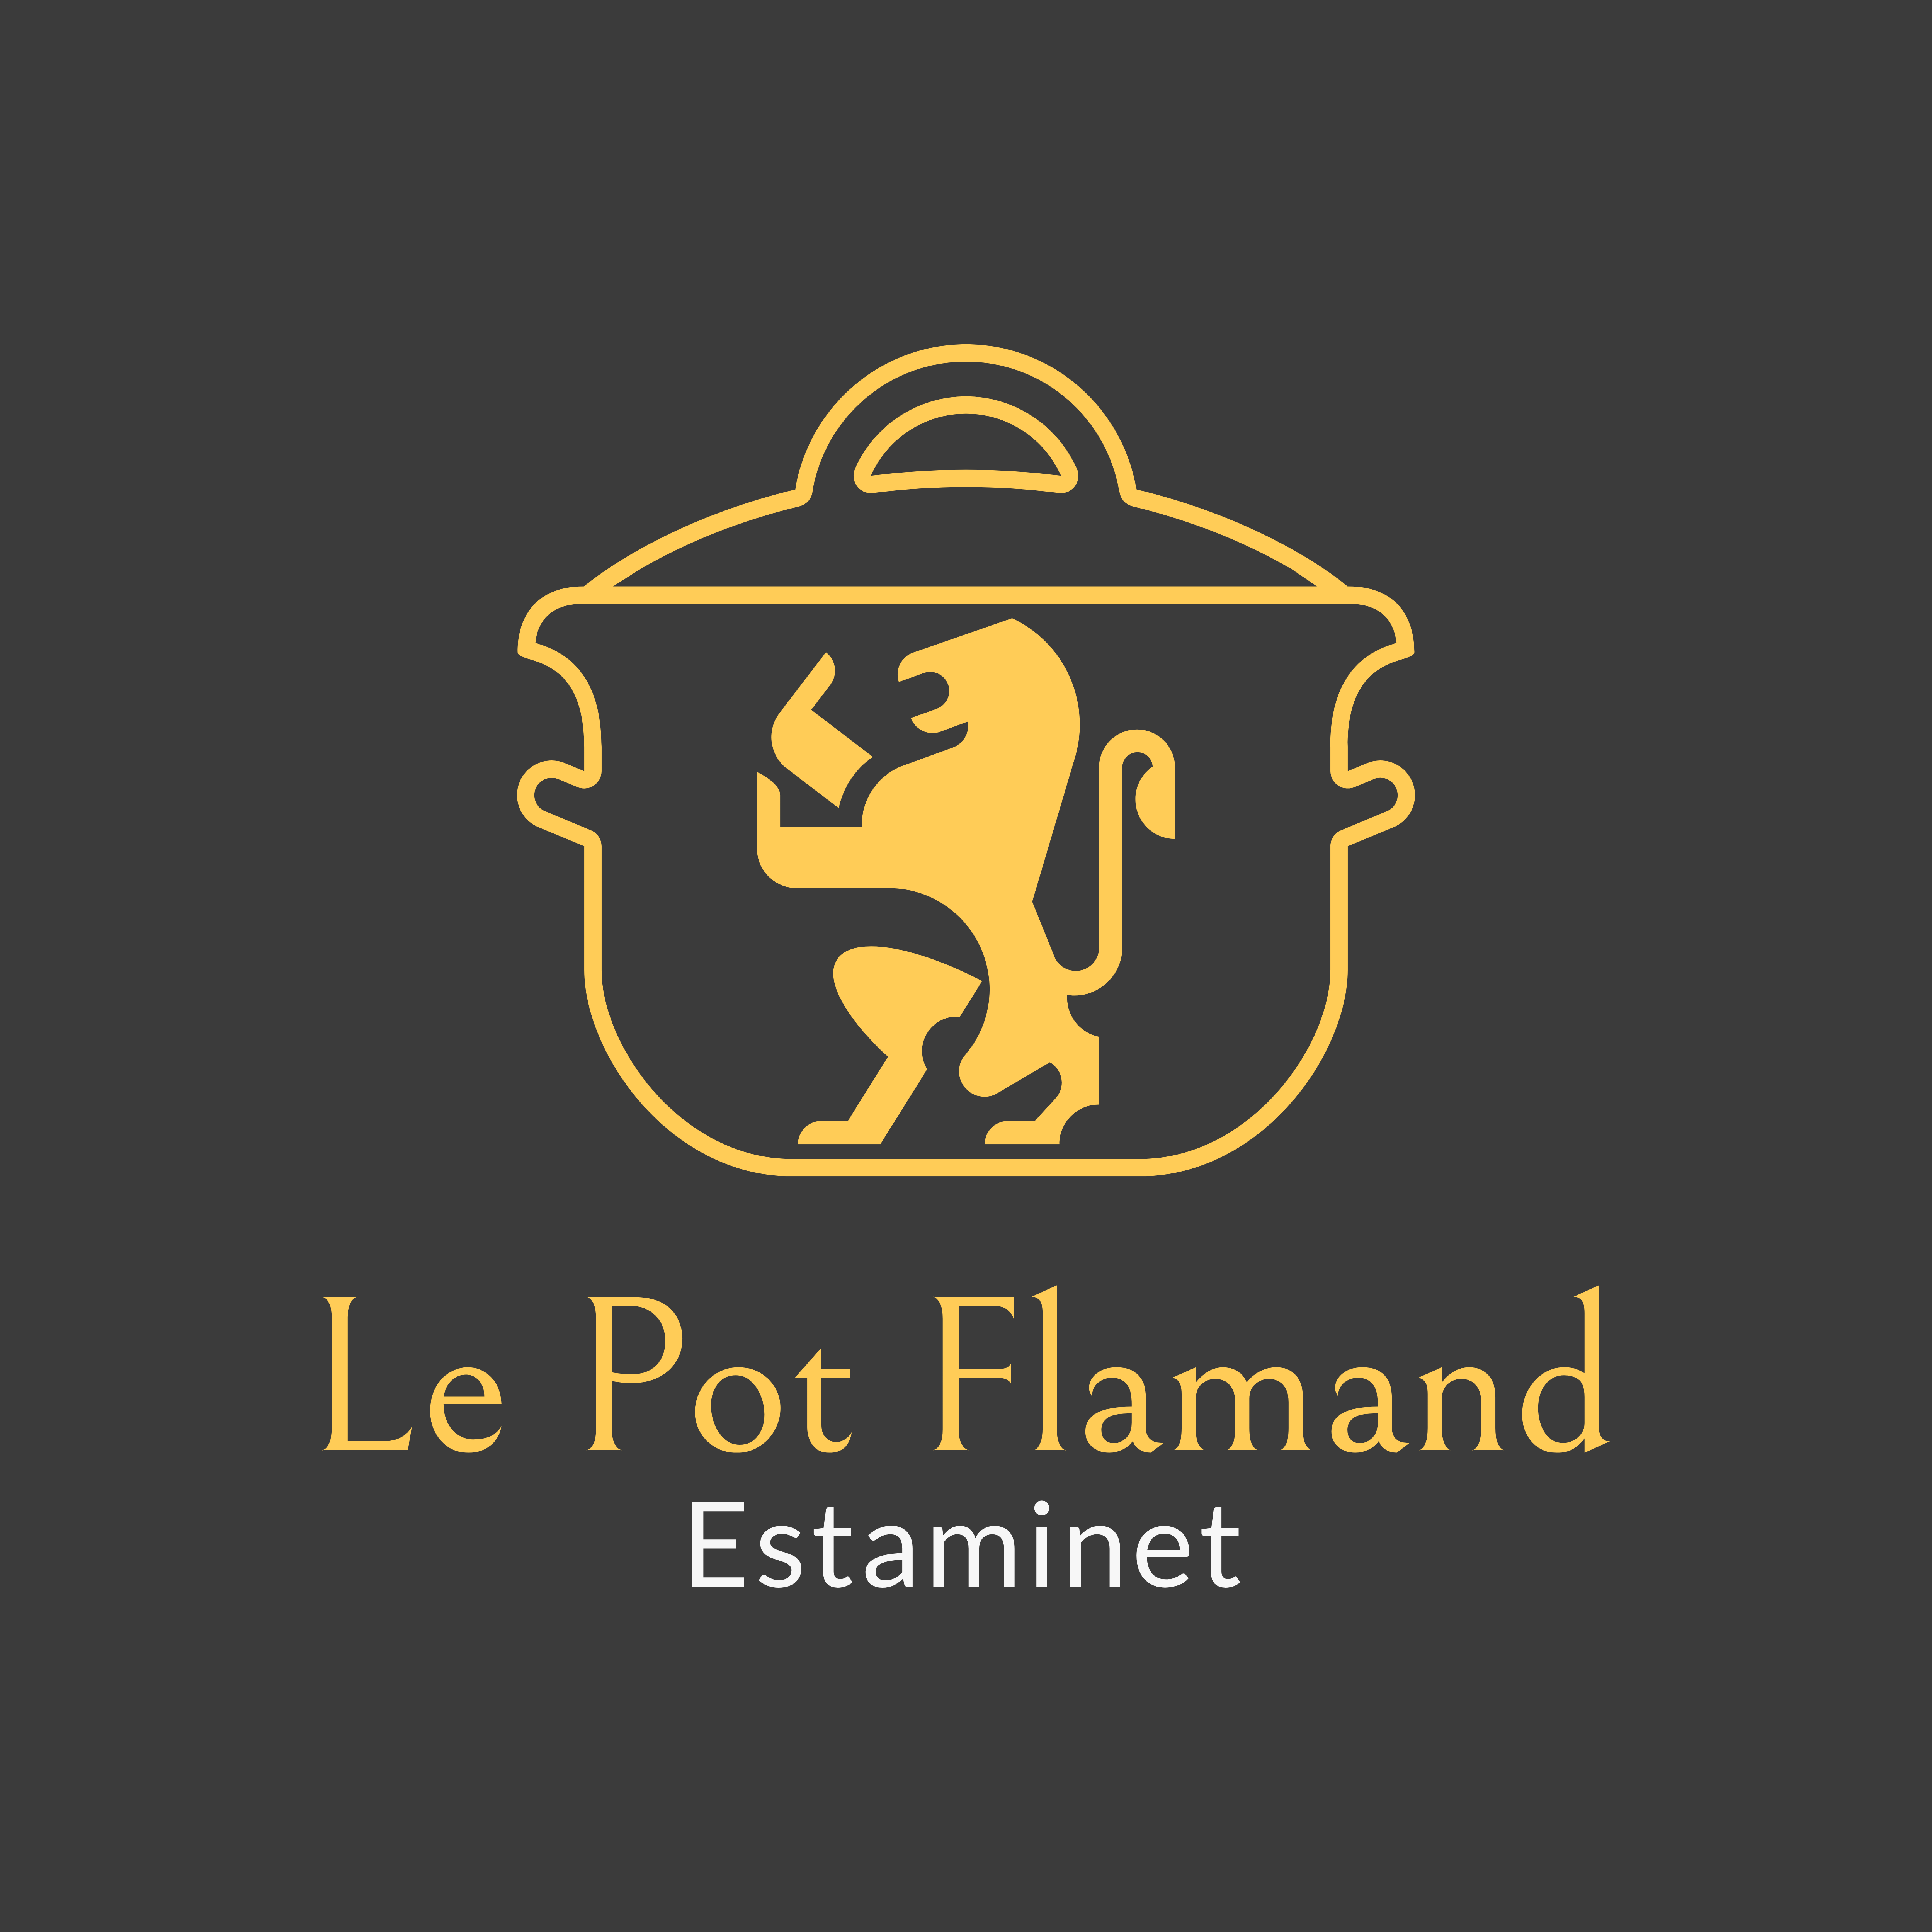 Estaminet Le Pot Flamand